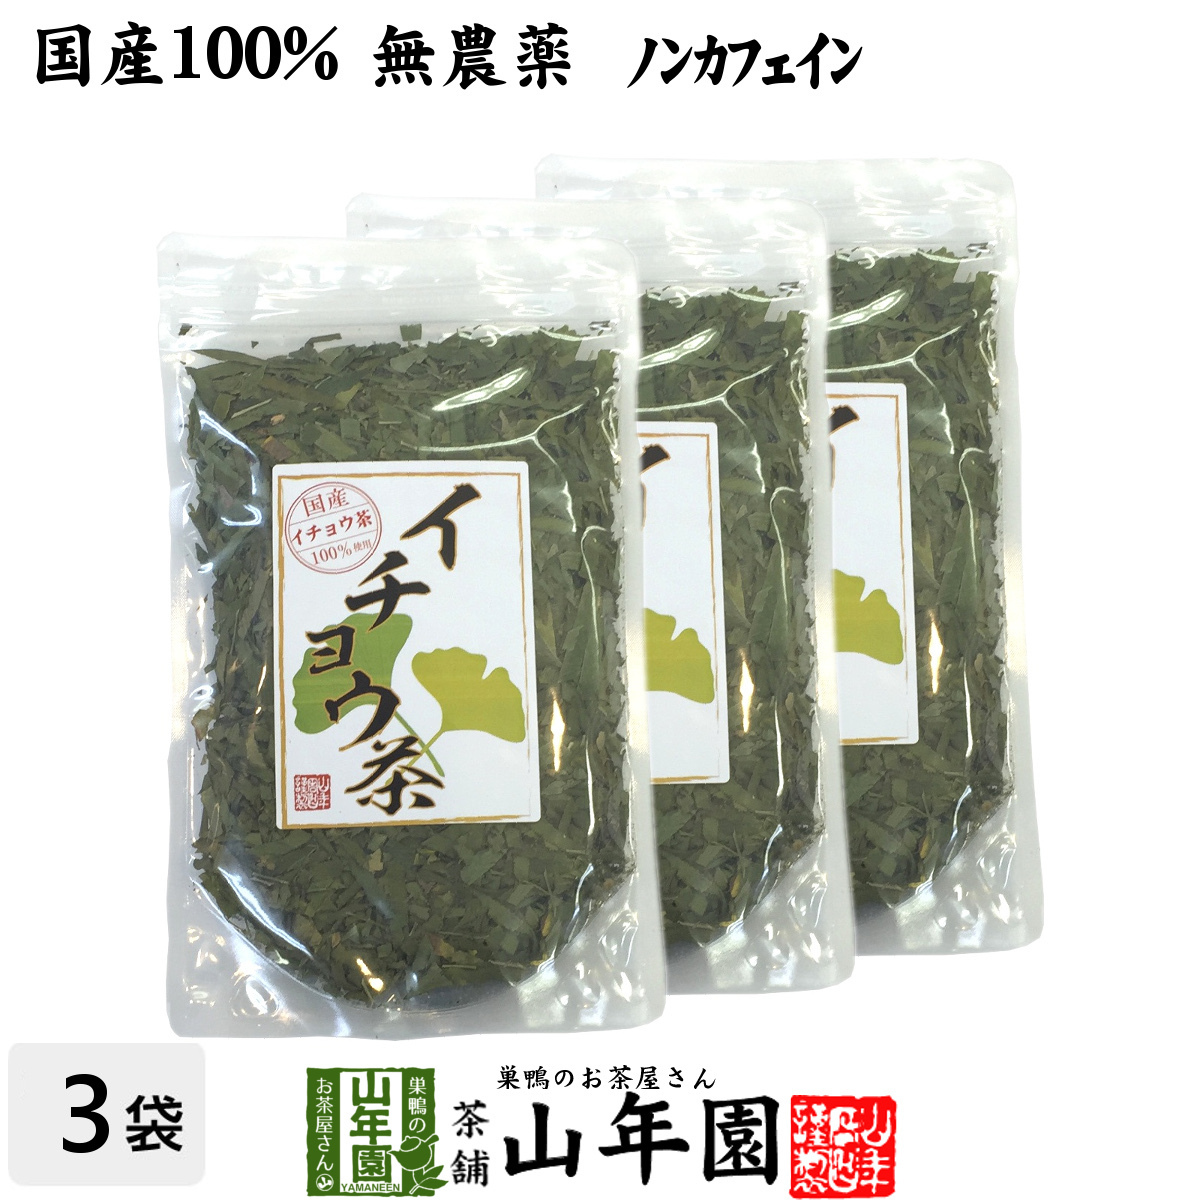 健康茶 イチョウ茶 イチョウ葉 70g×3袋セット 国産100% 無農薬 ノンカフェイン 送料無料_画像1